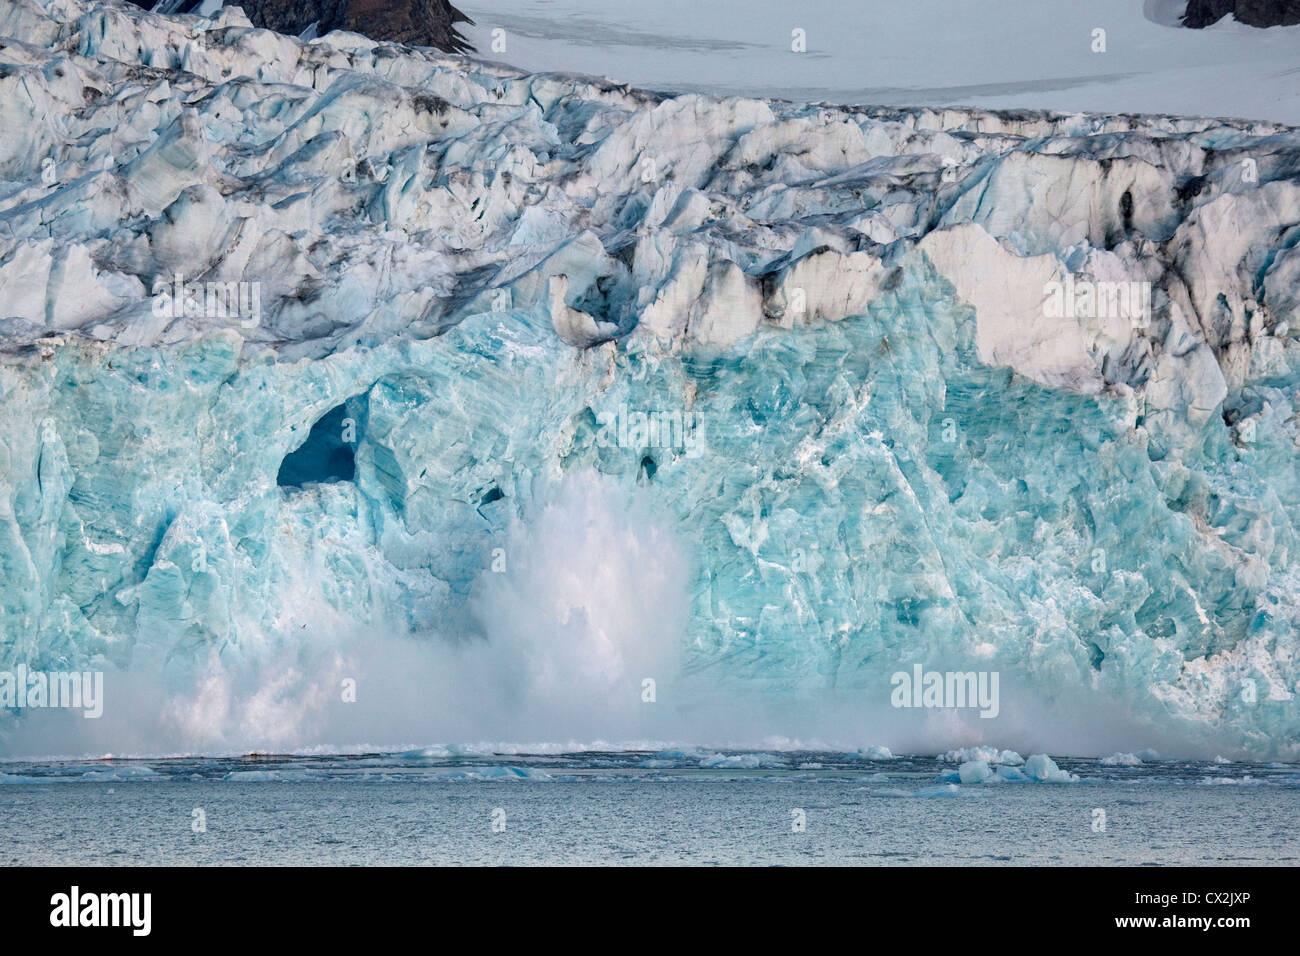 Grand gros morceau de glace se détachent des glaciers et le tumbling avec grand bruit dans l'Magdalenefjord sur Svalbard, Spitzberg, Norvège Banque D'Images